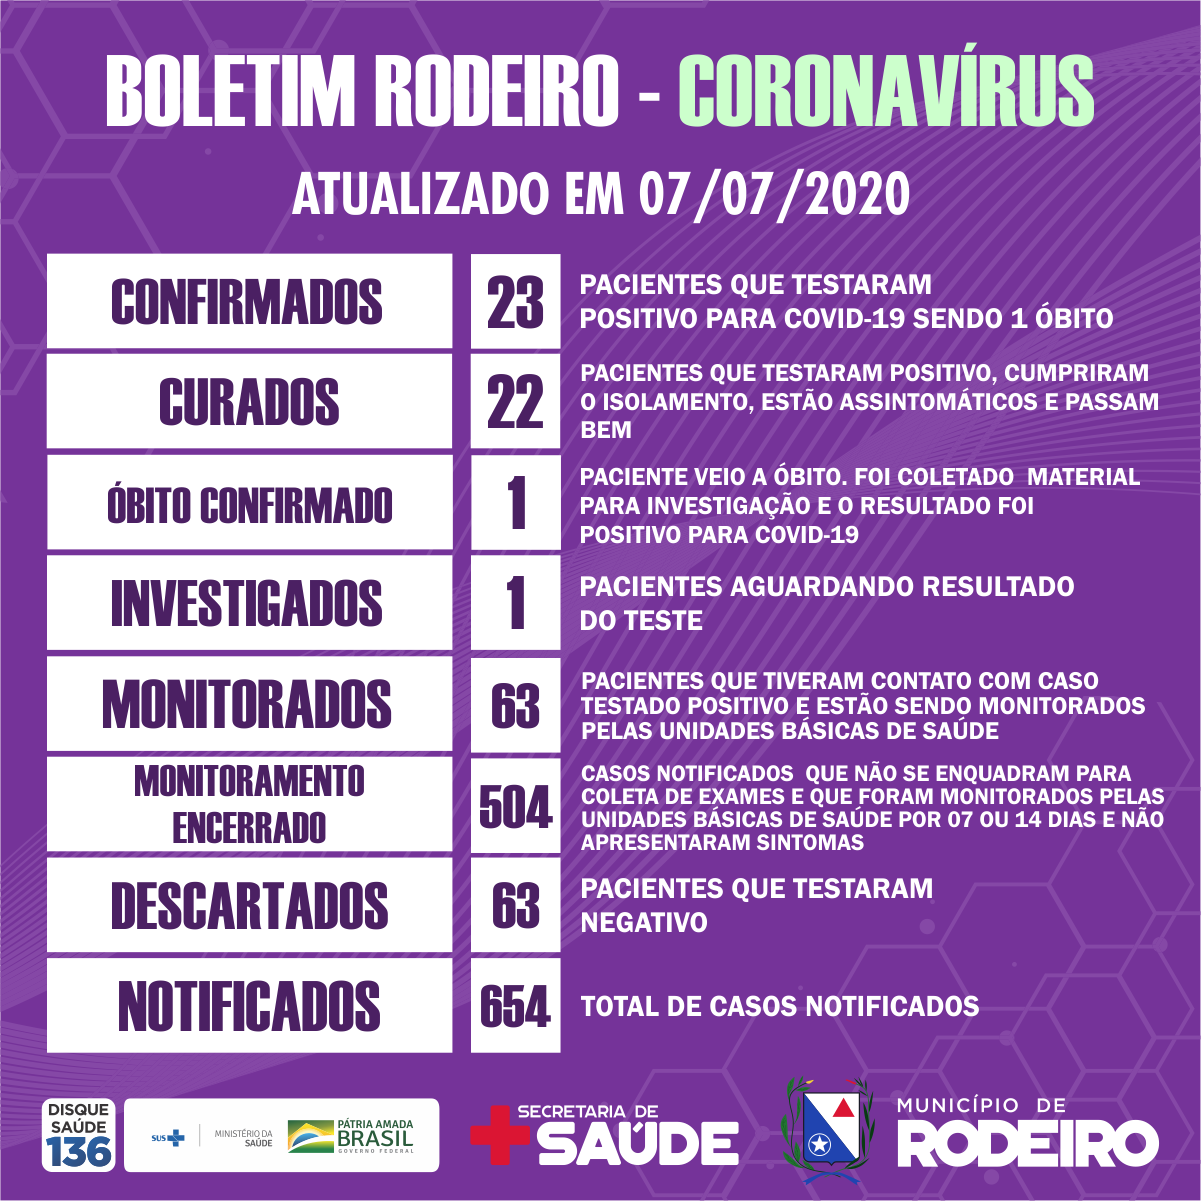 Boletim epidemiológico do Município de Rodeiro coronavírus, atualizado em 07/07/2020